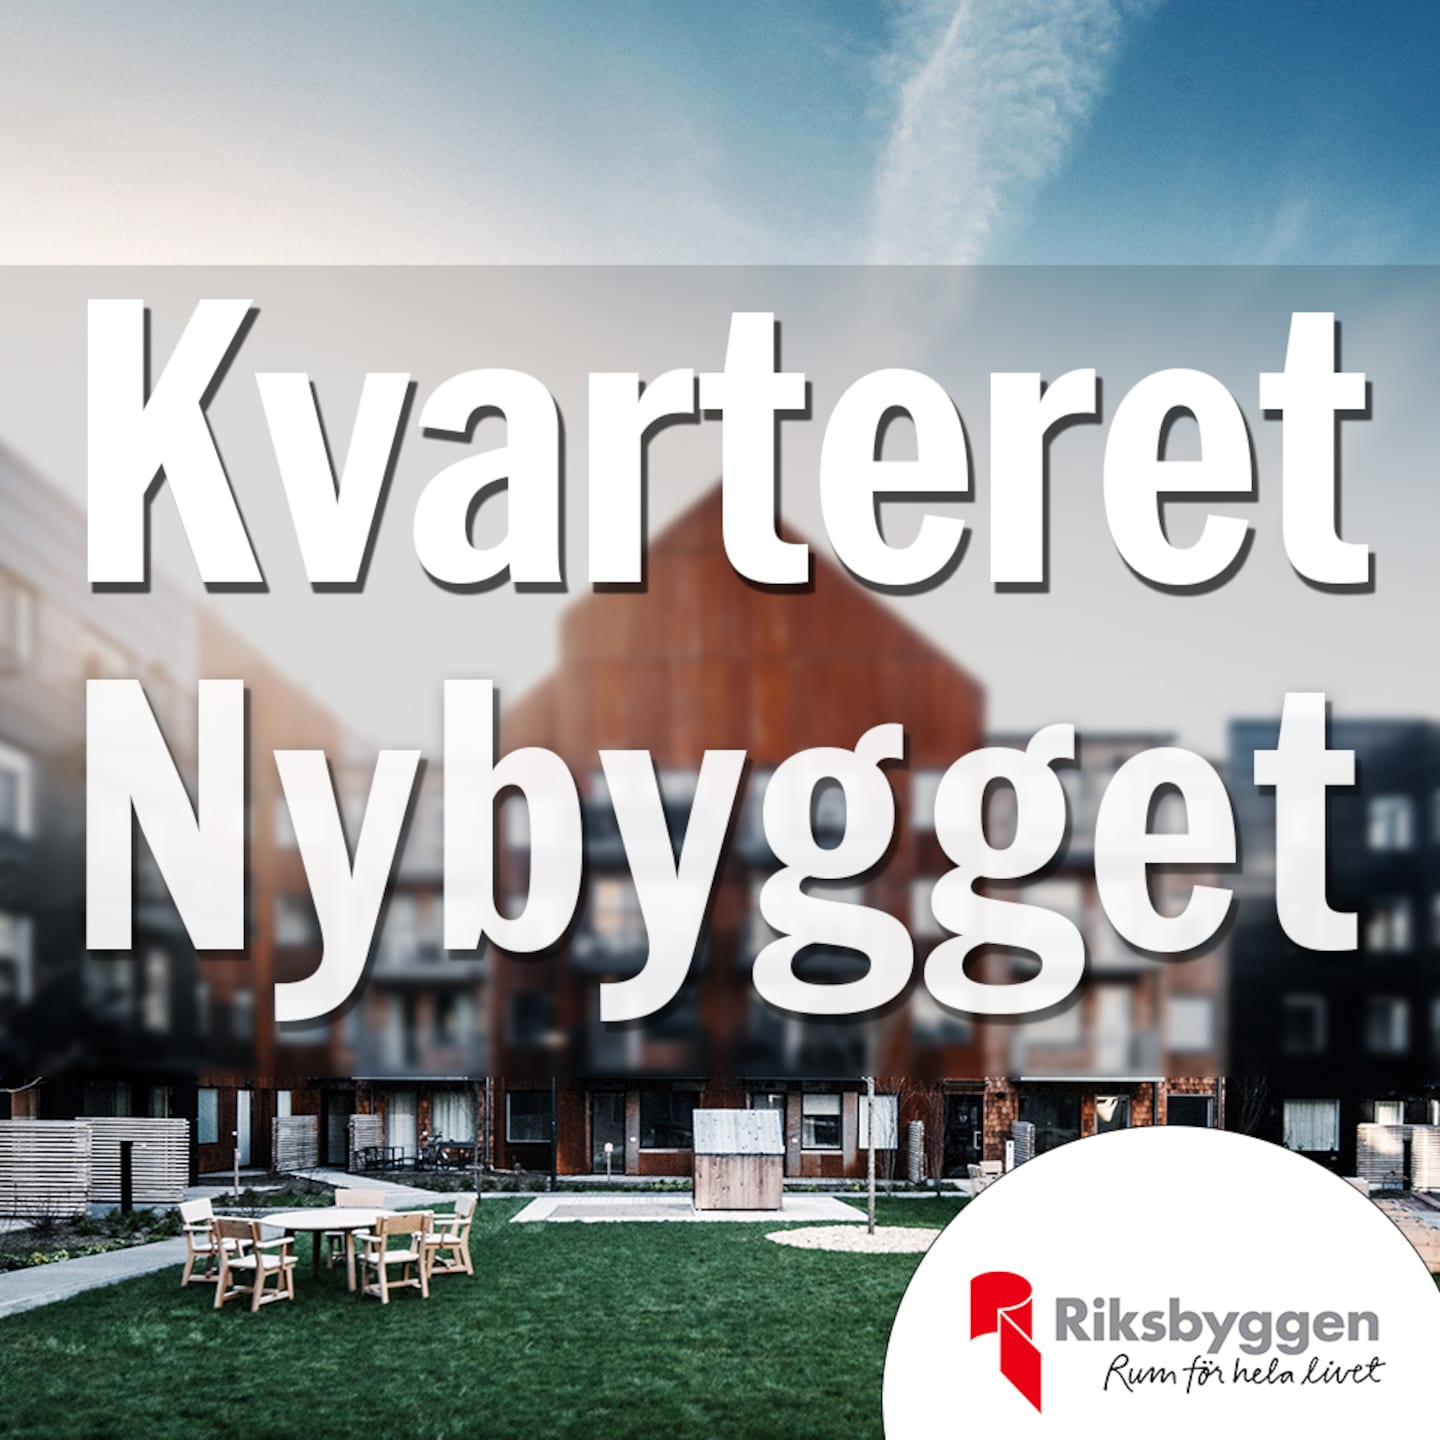 Annons från Riksbyggen: Bobbo, 76, om bostadsvalet: ”Hellre flytta än flyttas”